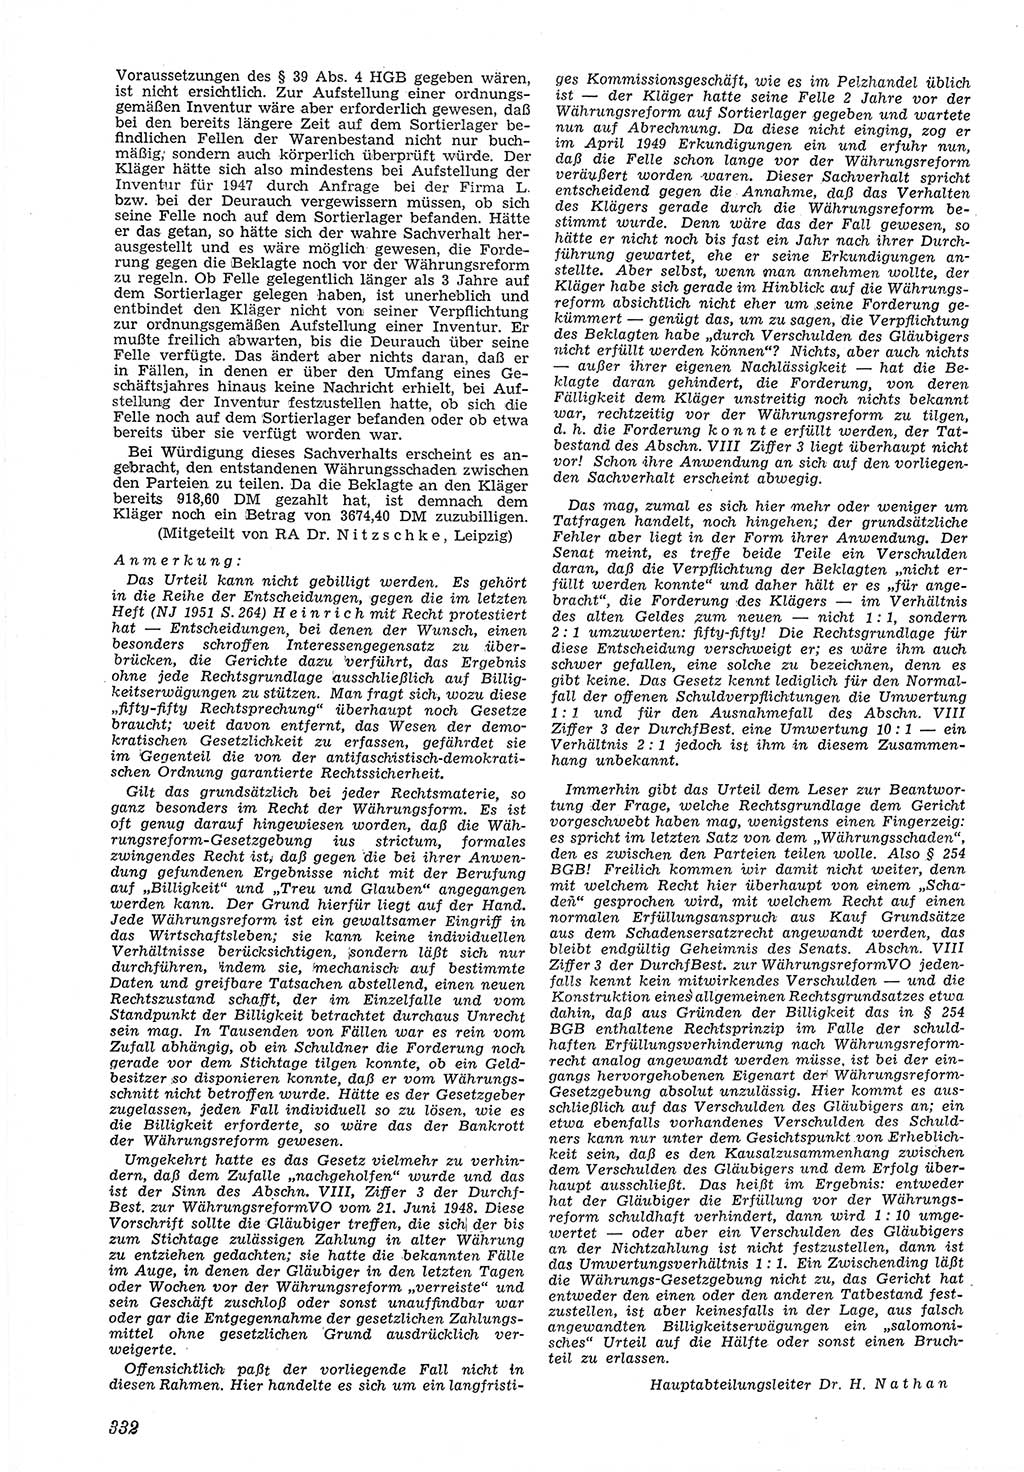 Neue Justiz (NJ), Zeitschrift für Recht und Rechtswissenschaft [Deutsche Demokratische Republik (DDR)], 5. Jahrgang 1951, Seite 332 (NJ DDR 1951, S. 332)